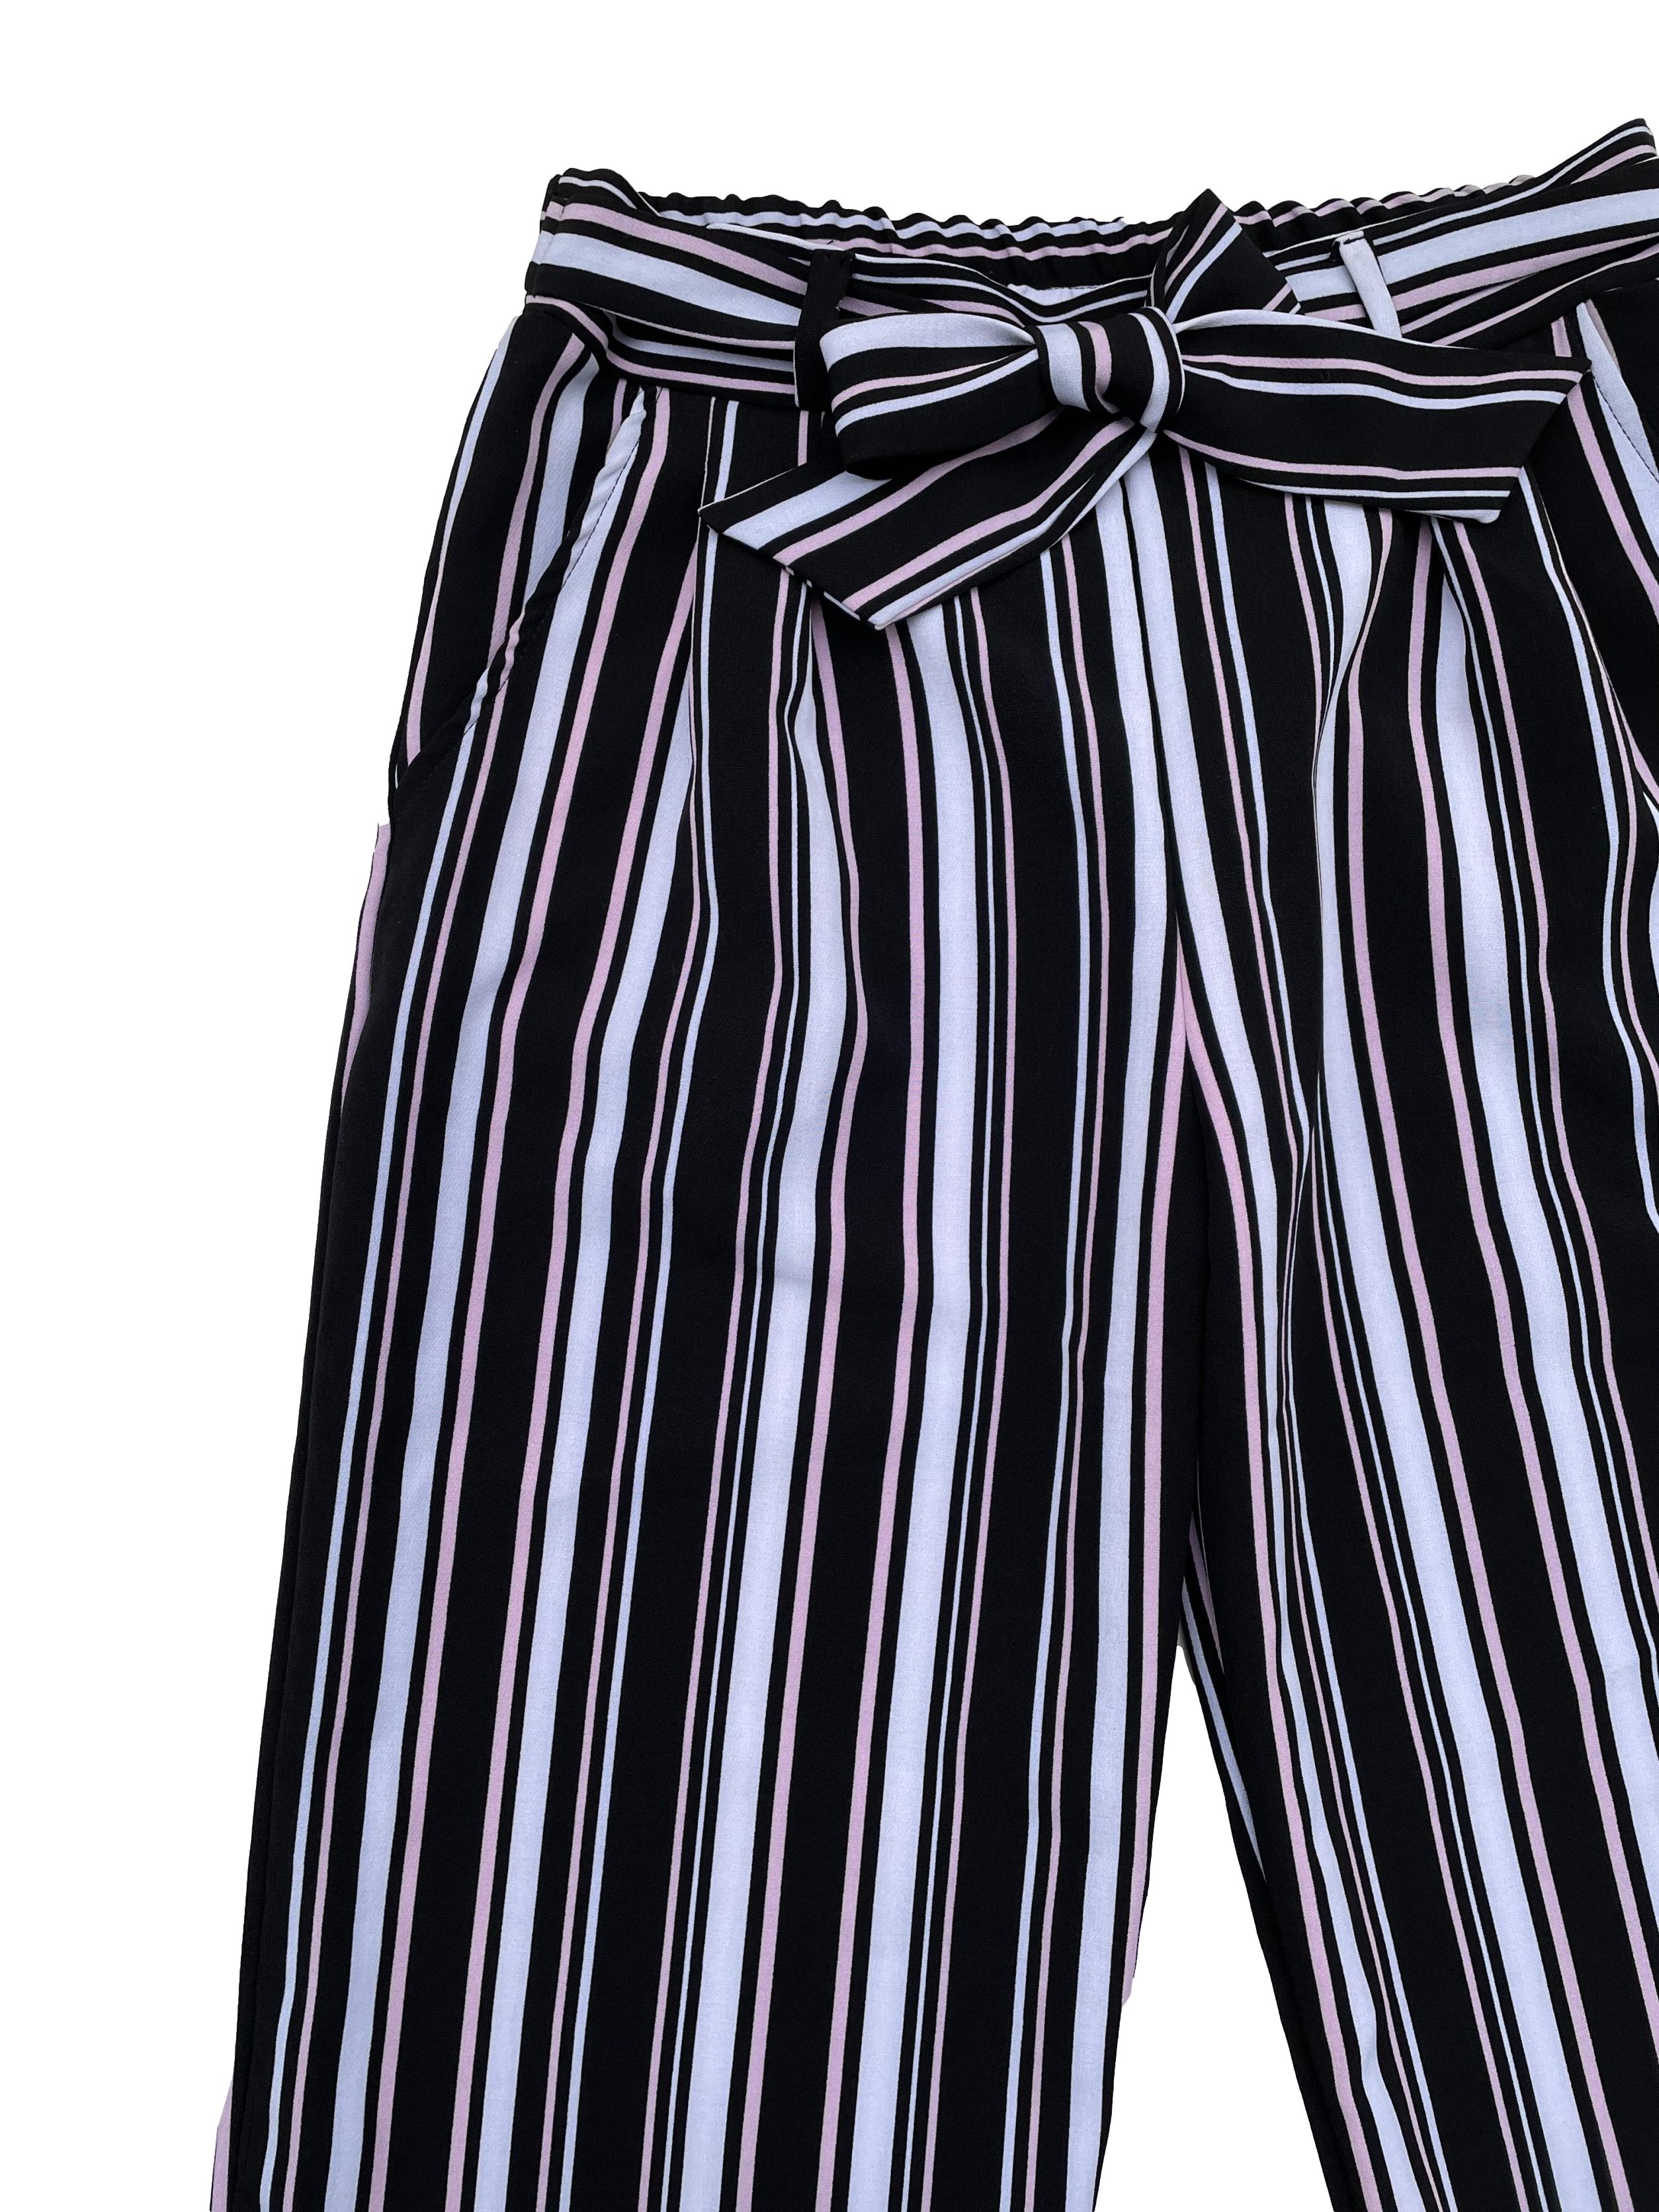 Pantalón a rayas en colores blanco, negro y rosa, corte recto, elástico en cintura posterior con cintos y bolsillos laterales. Cintura 76cm sin estirar, Largo 100cm.